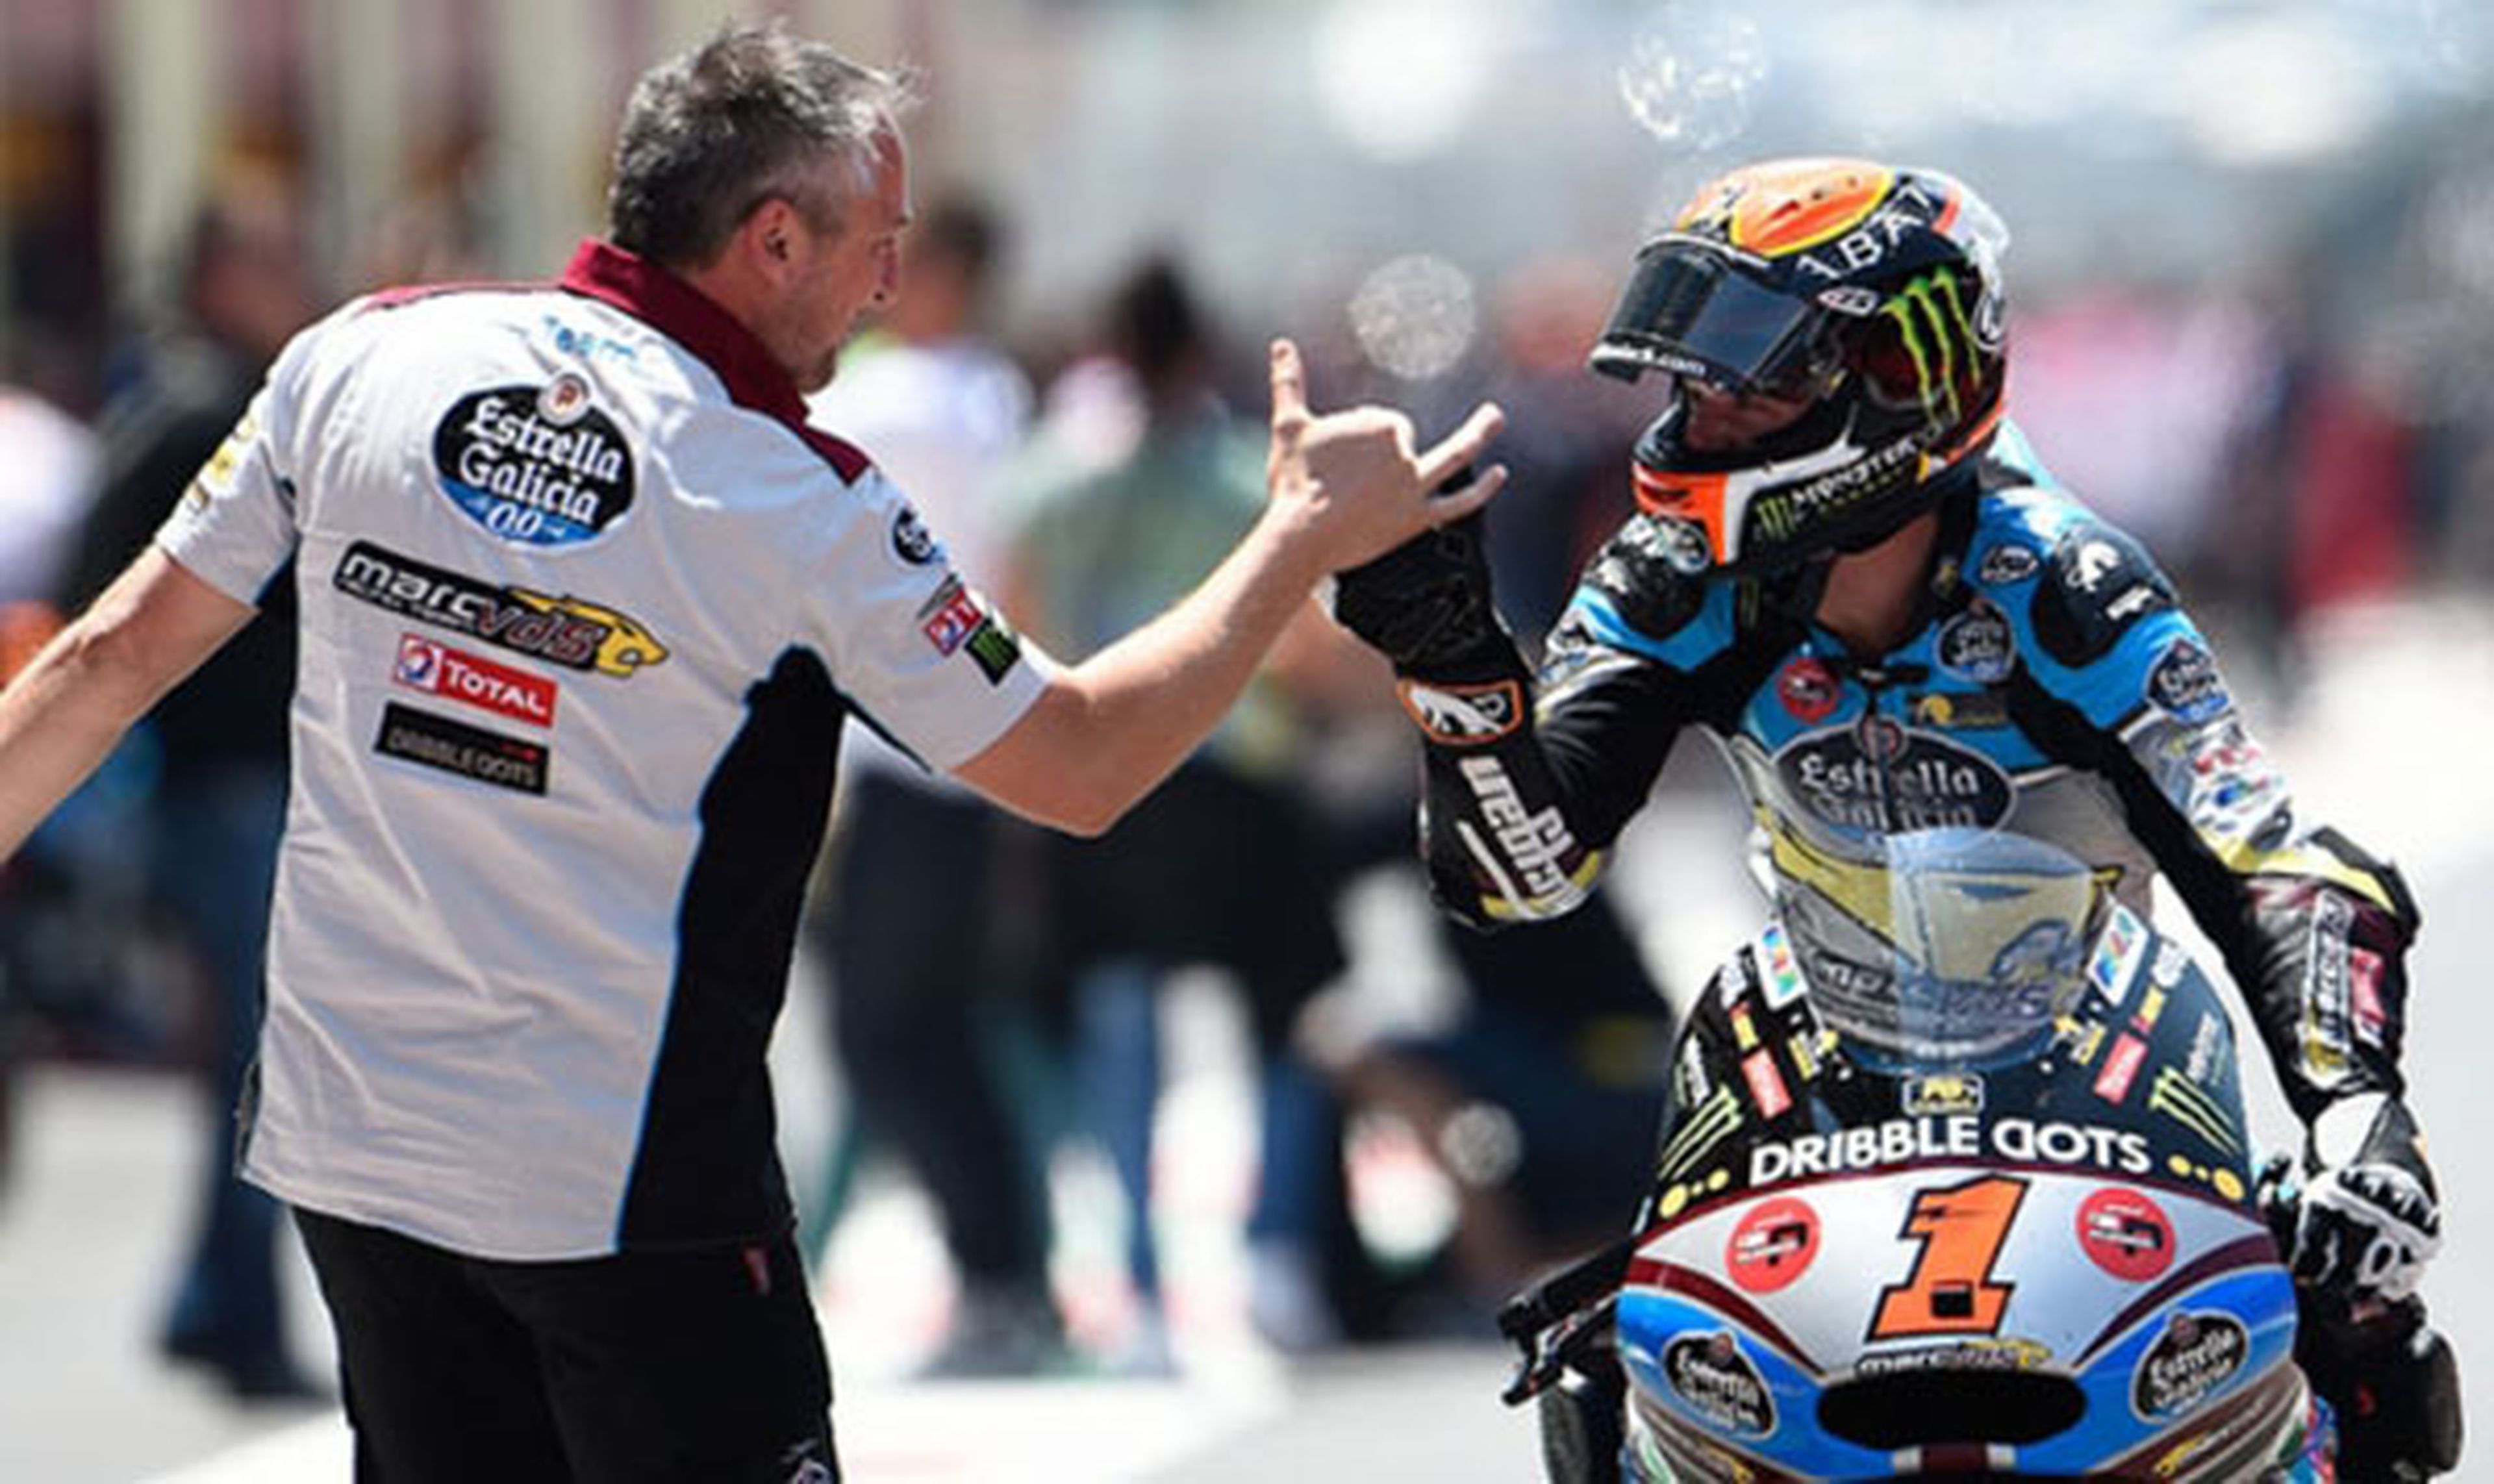 Clasificación general Moto2 tras GP de Italia 2015